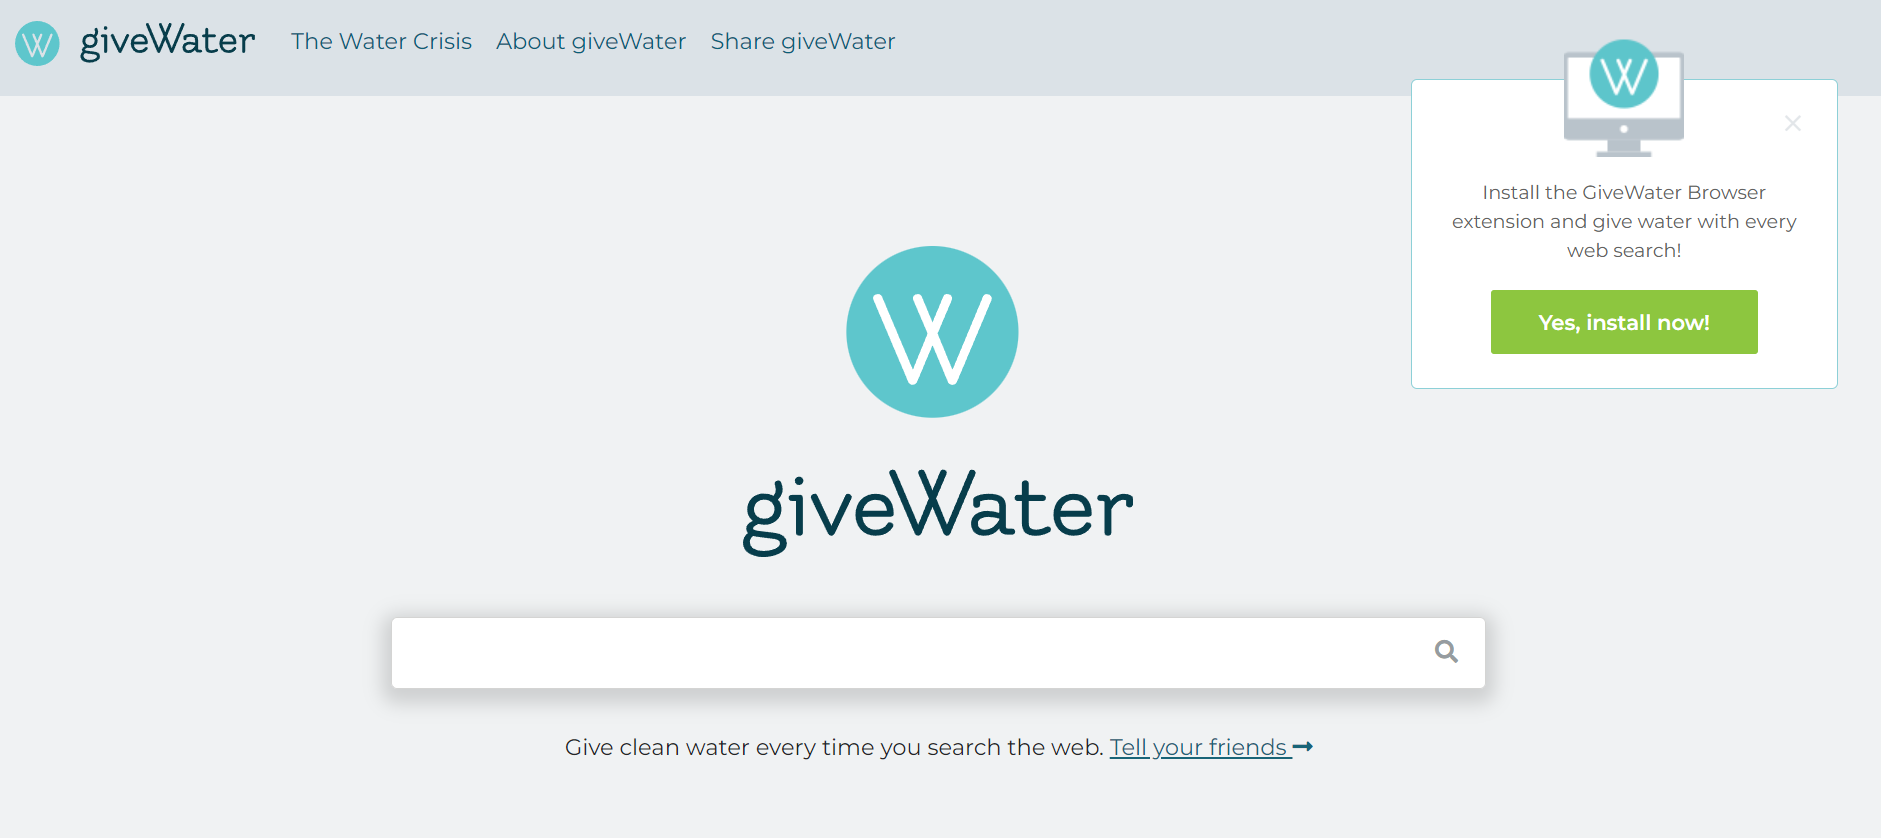 Buscadores aparte de Google: GiveWater